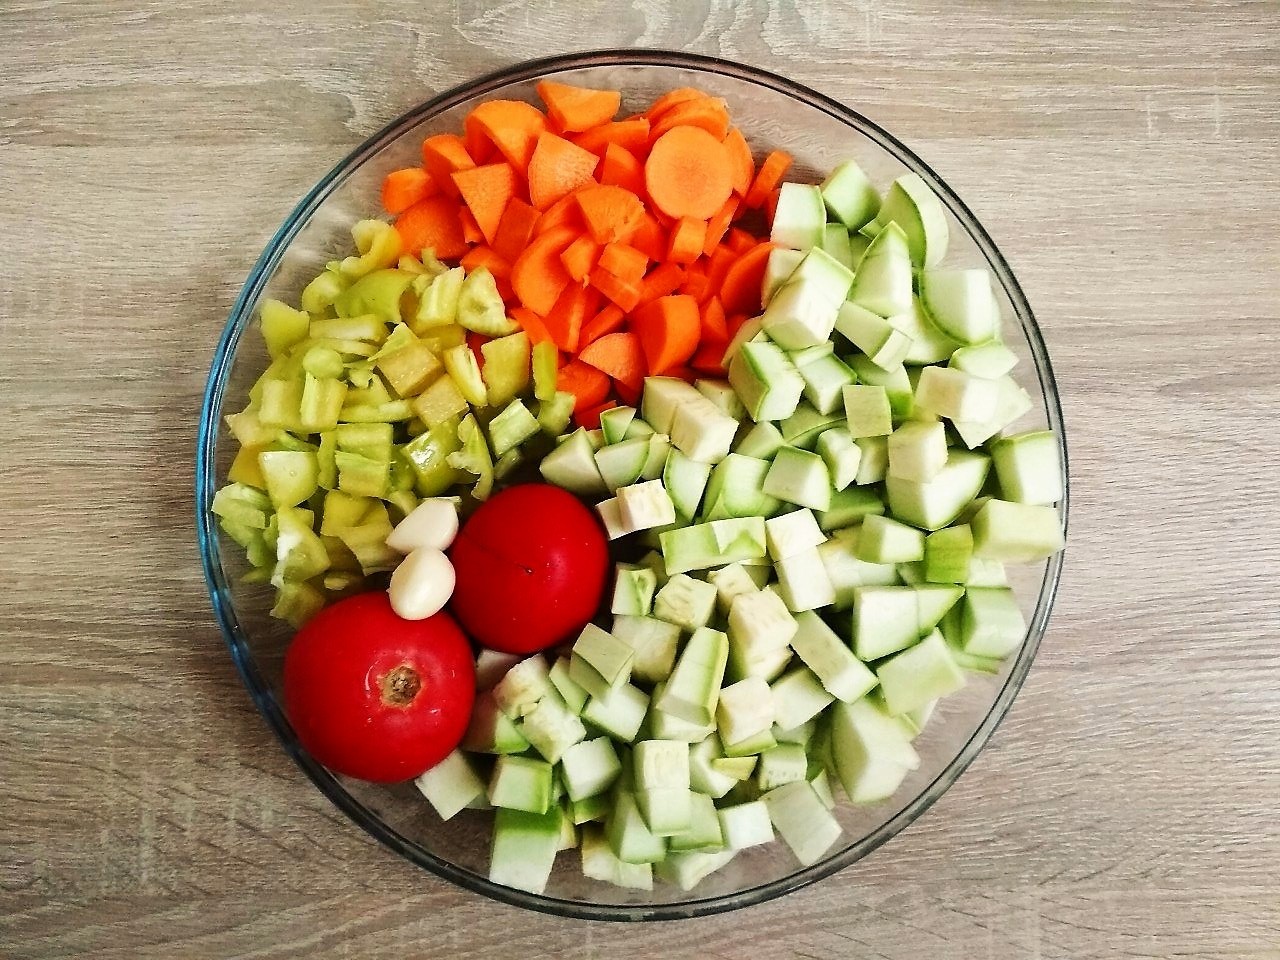 Тушёные овощи как пишется. Тушёные овощи как в детском саду рецепт с фото. Овощи в желе